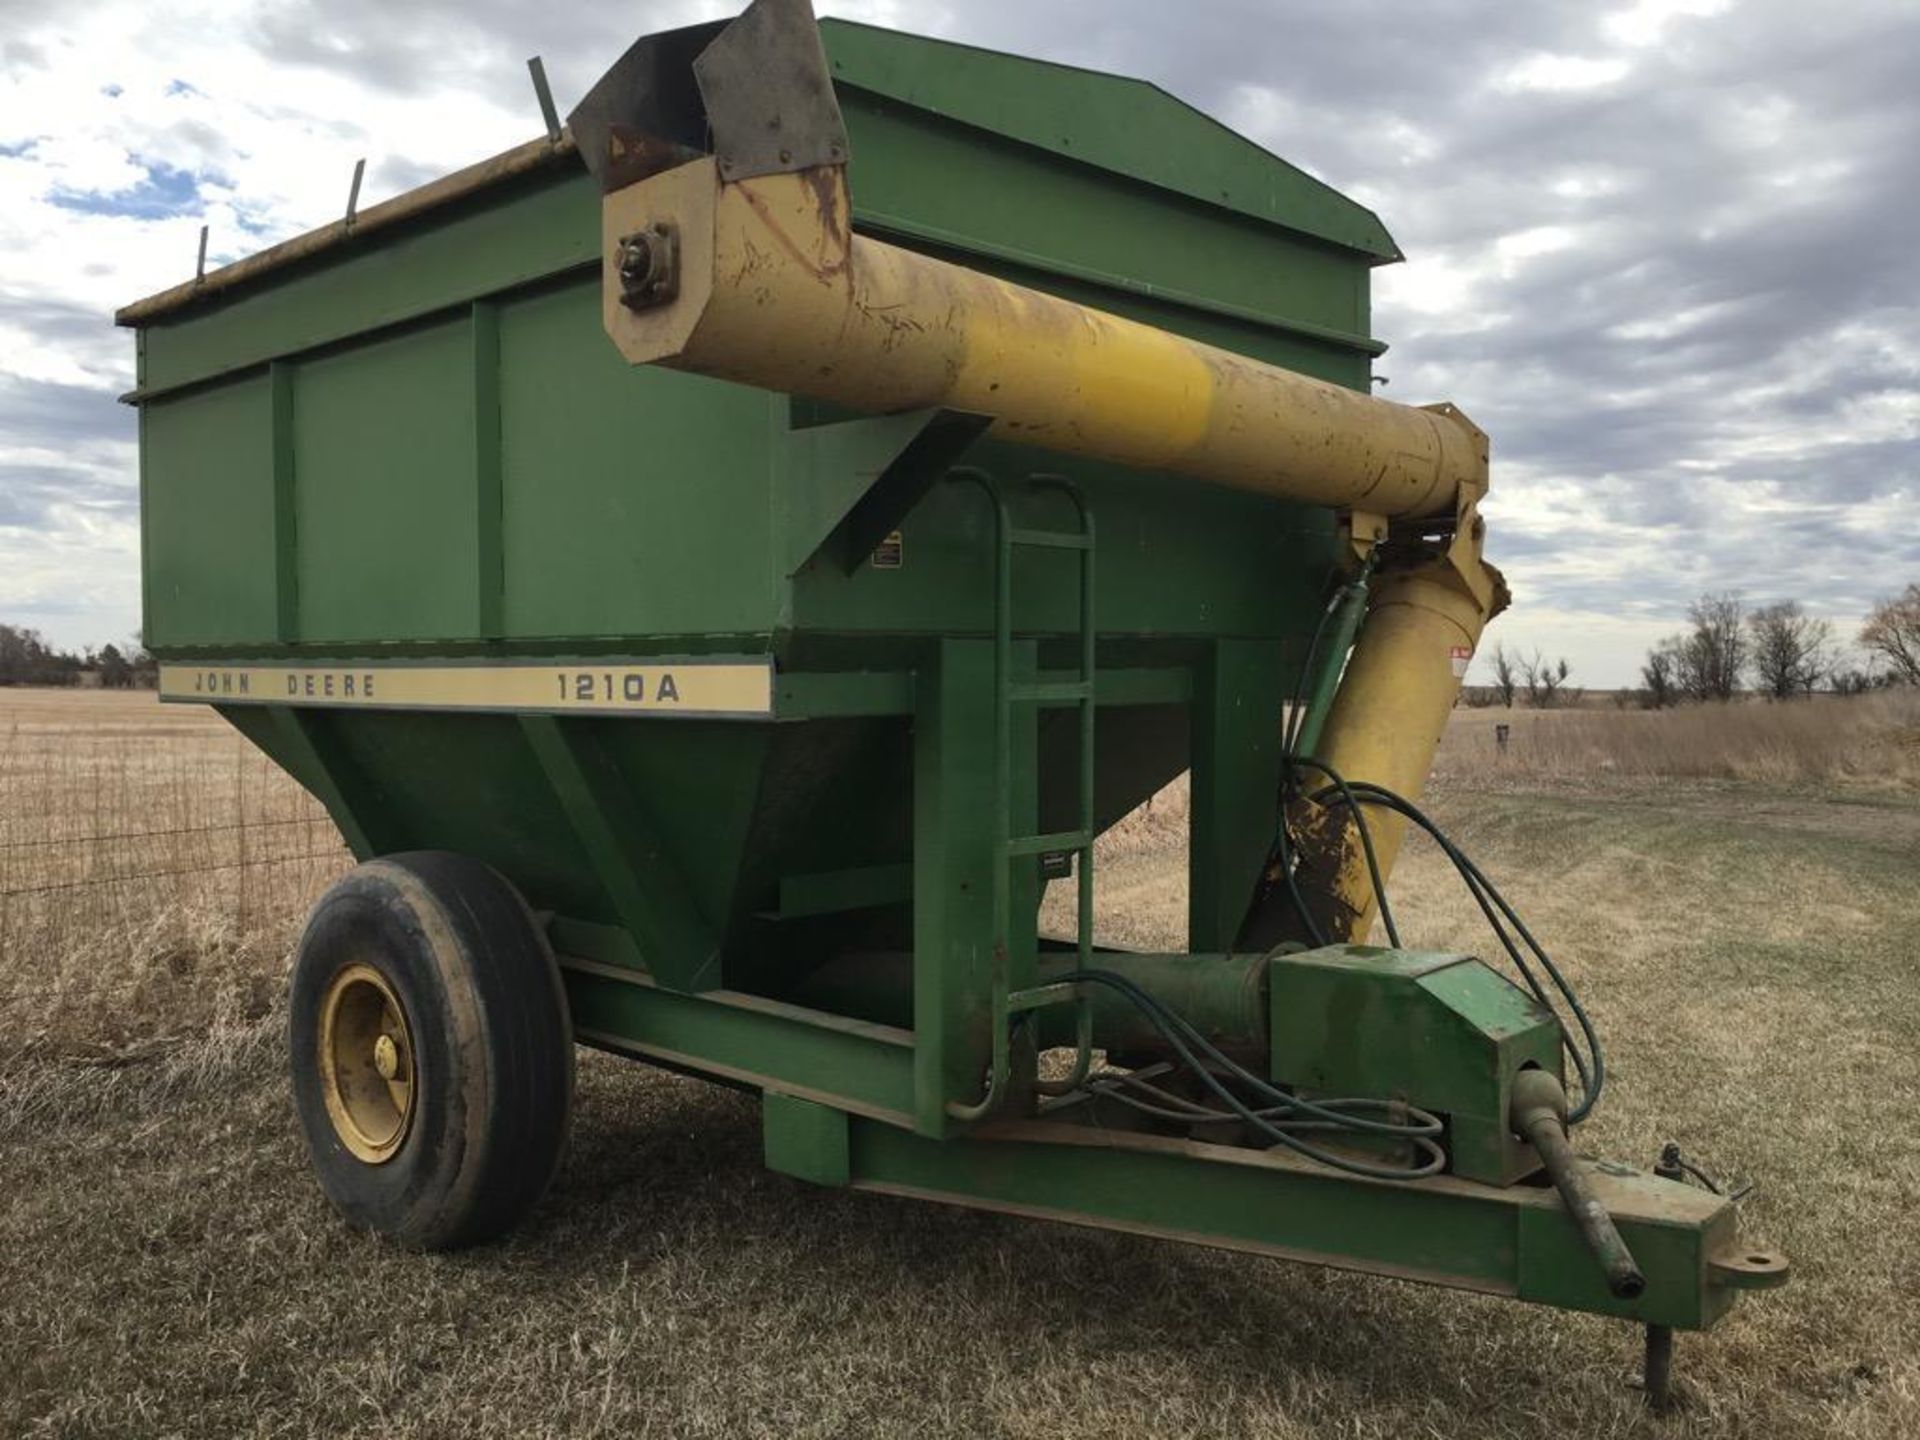 John Deere 1210A Grain Cart 400 Bushel, W/ roll tarp